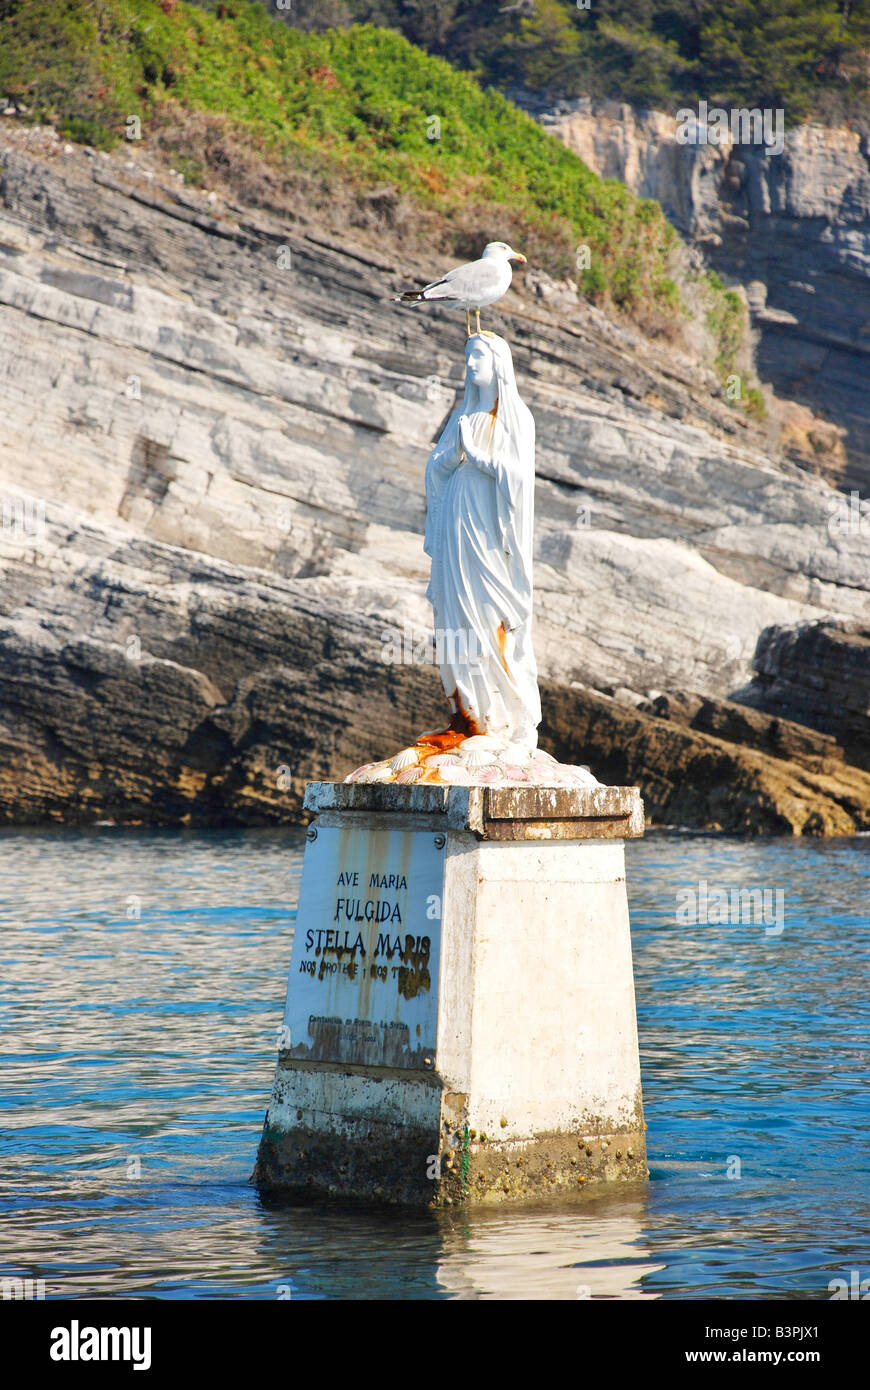 Statue de la Vierge Marie, l'île de Tino, Portovenere, Ligury, Italie Banque D'Images